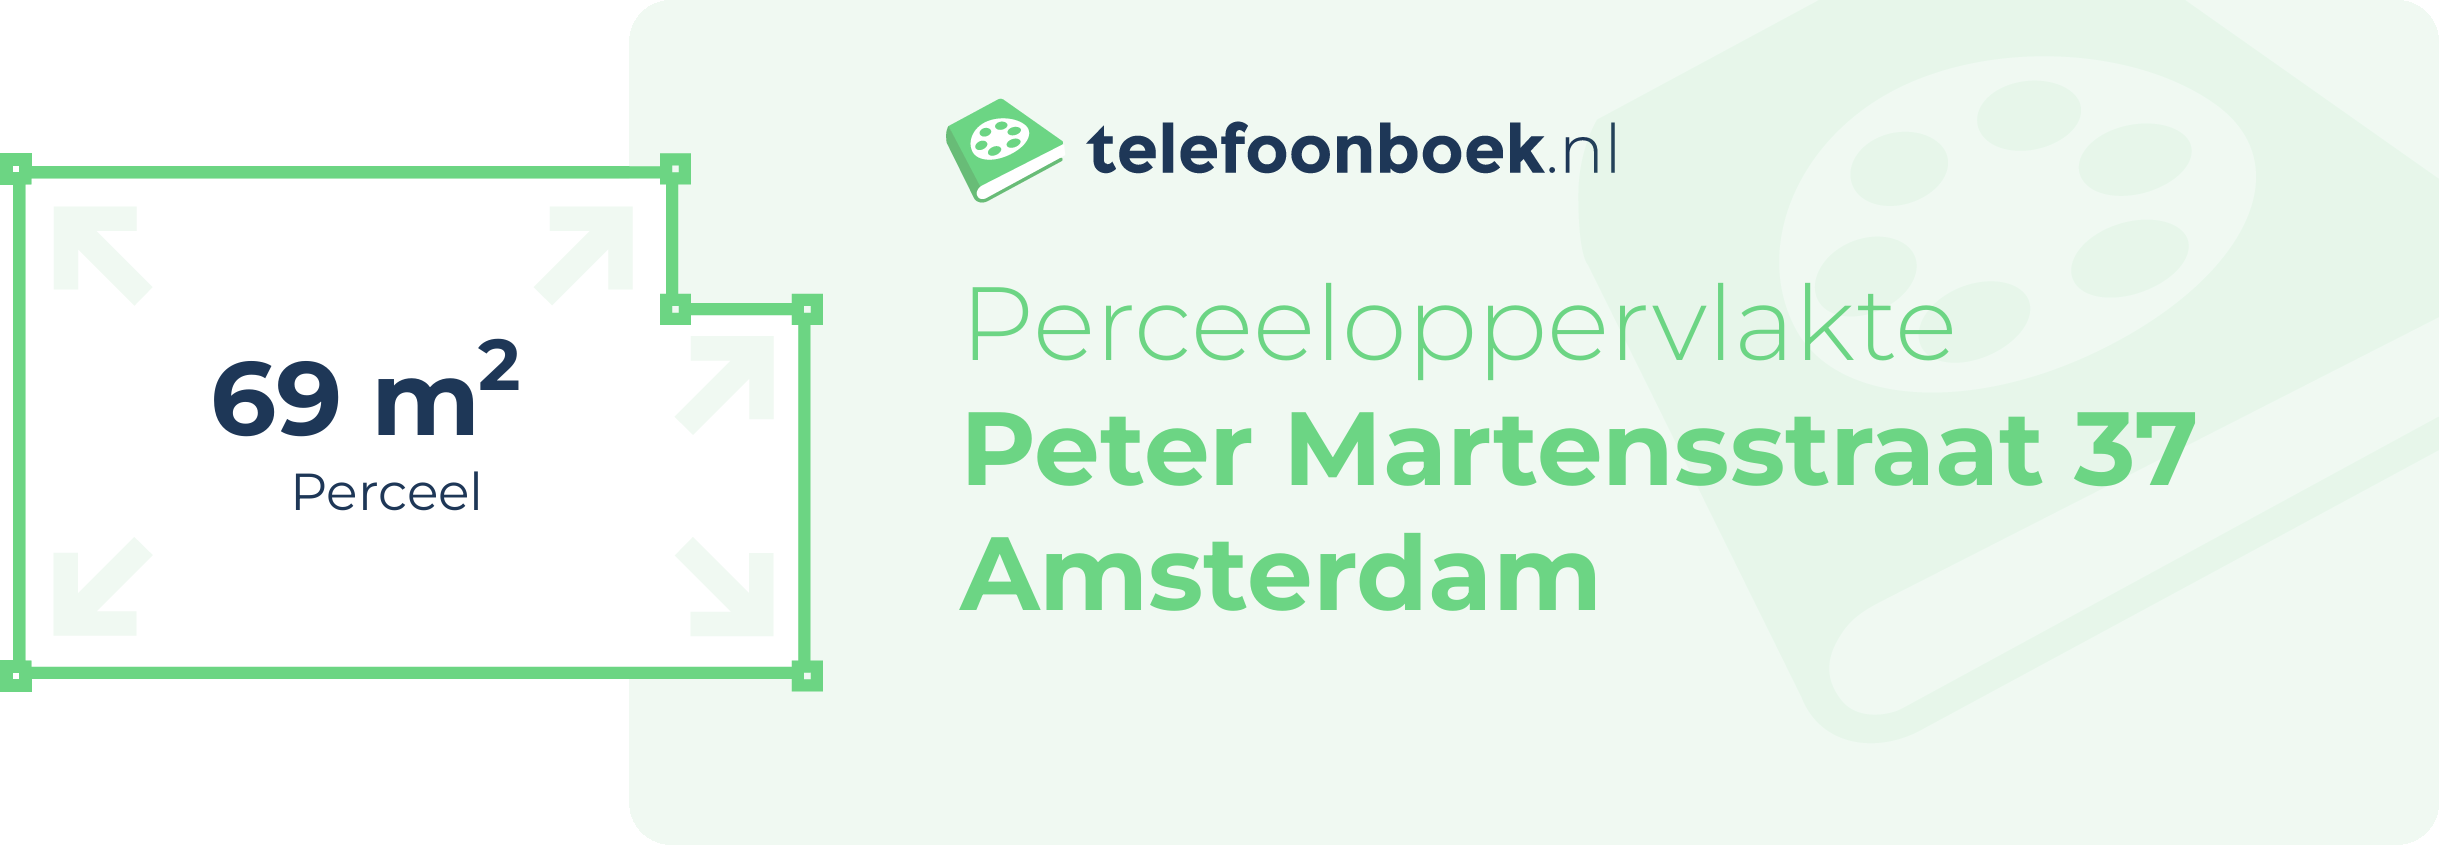 Perceeloppervlakte Peter Martensstraat 37 Amsterdam